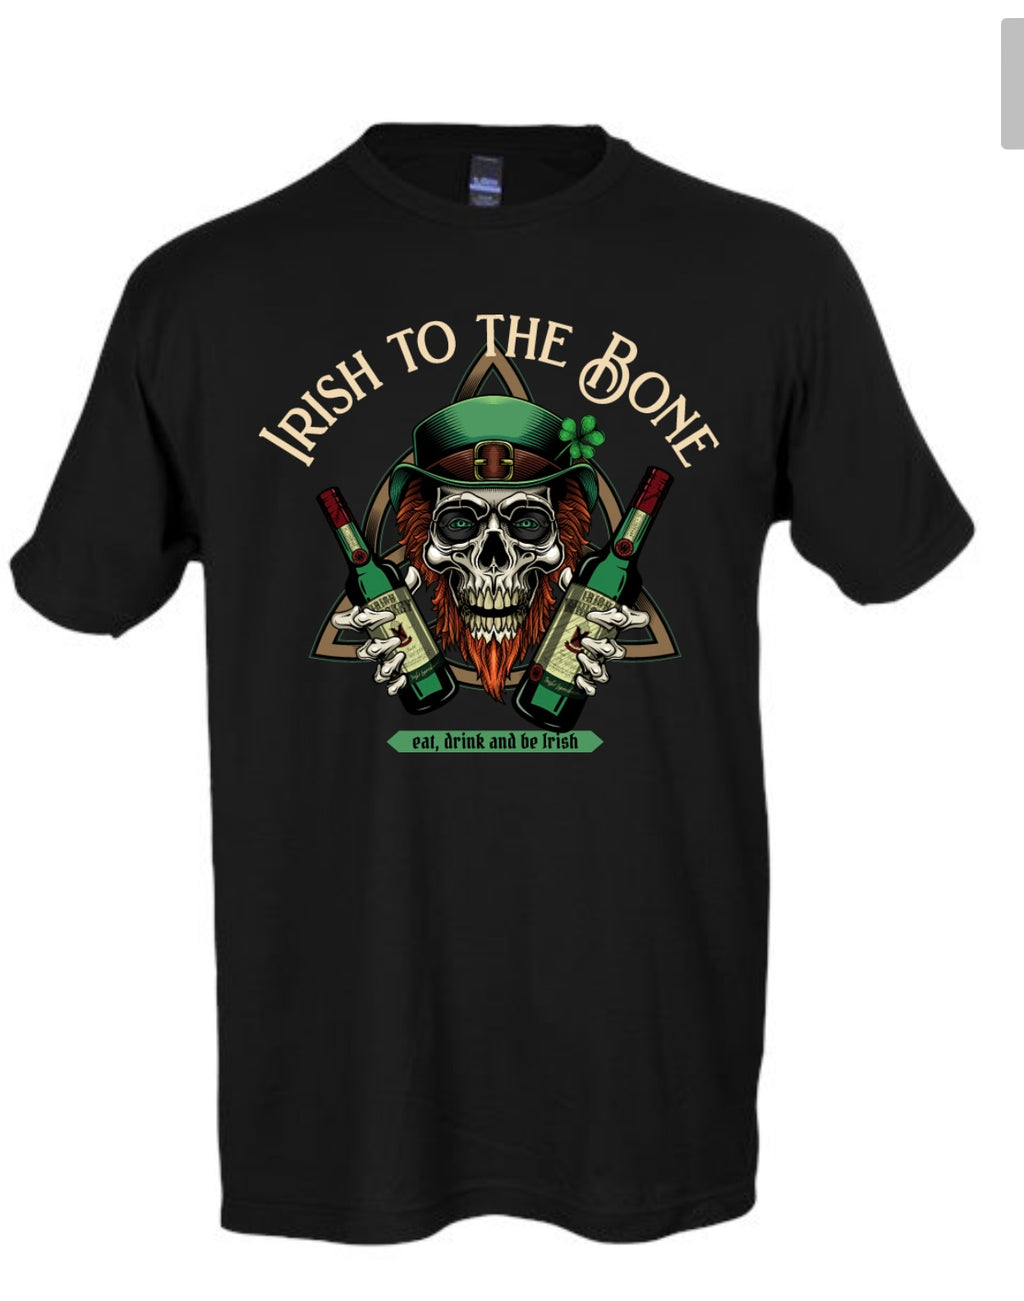 Irish to the bone T-shirt